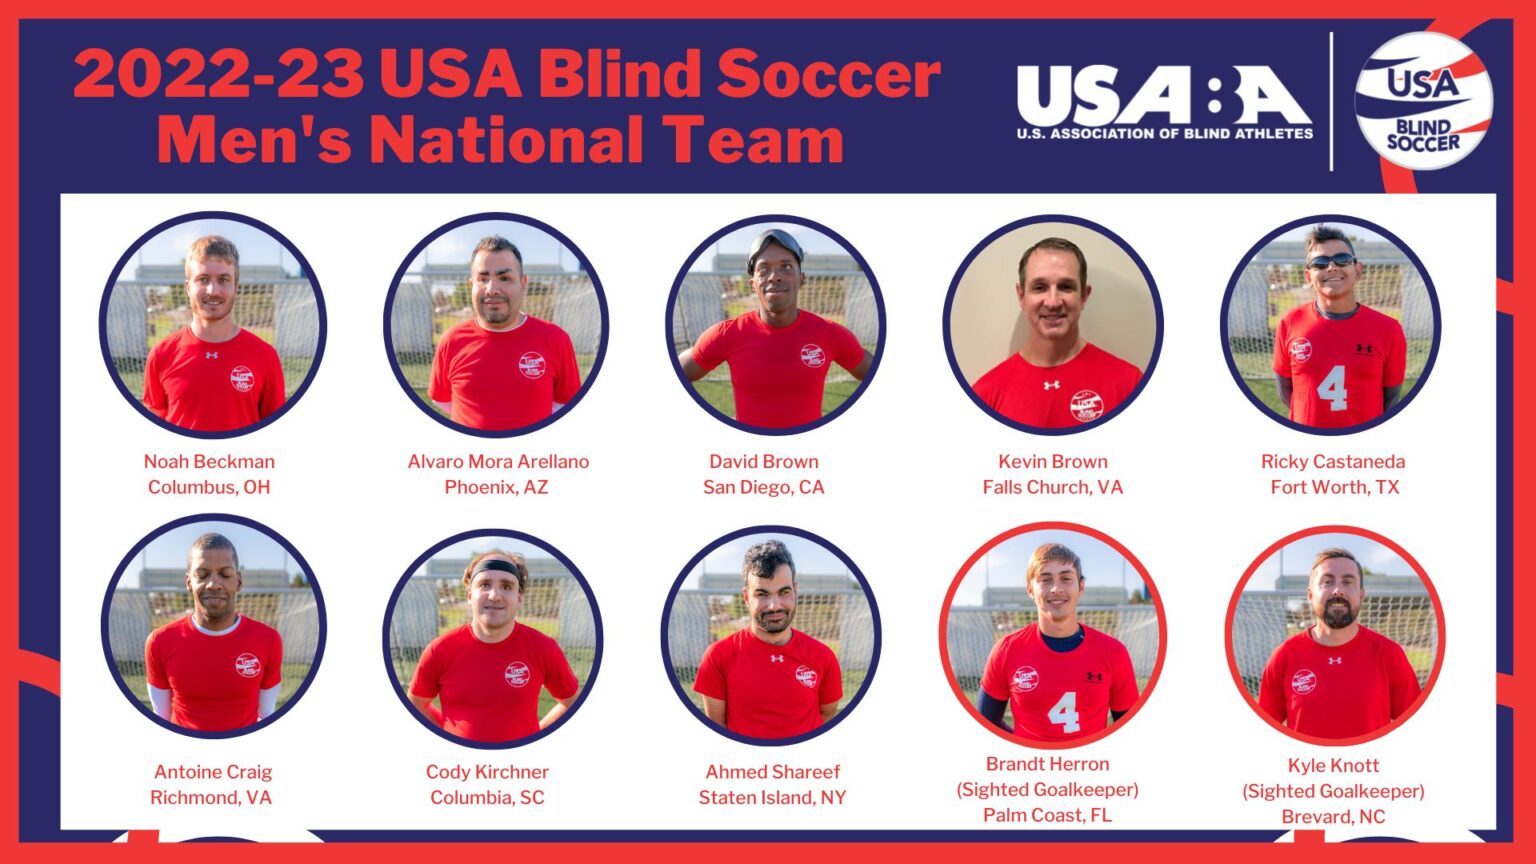 202223 USA Blind Soccer Men’s National Team U.S. Association of